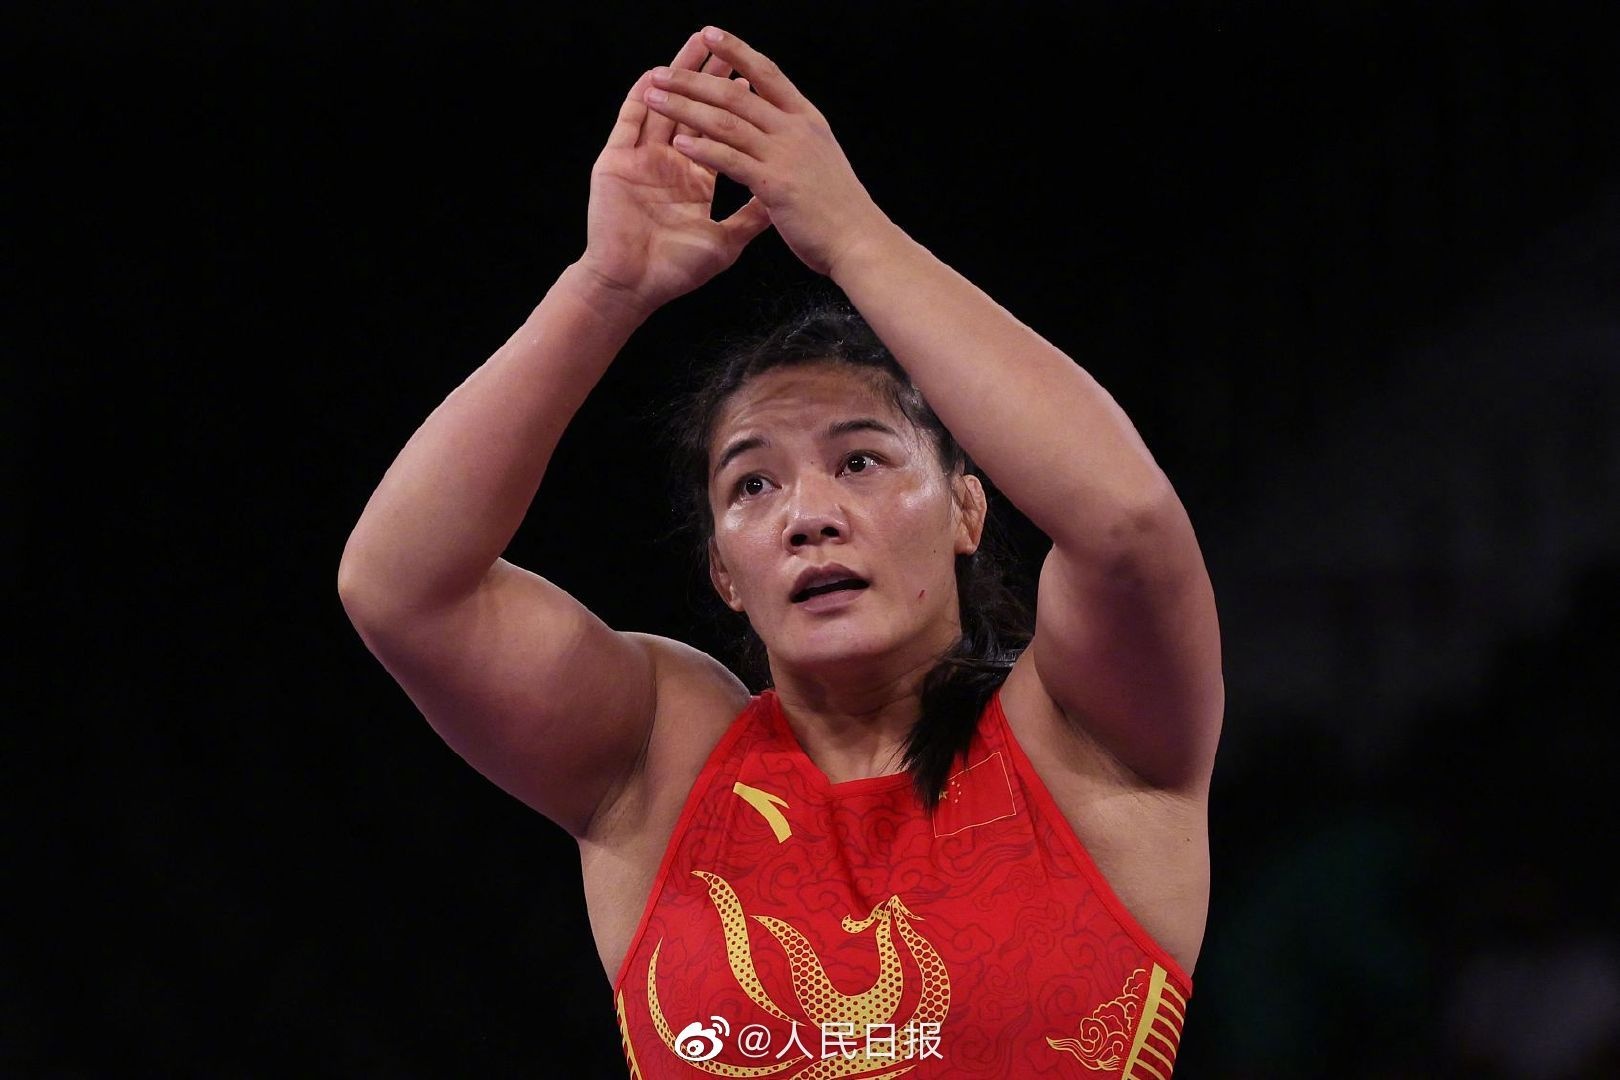 周倩获得奥运会摔跤女子自由式76公斤级铜牌